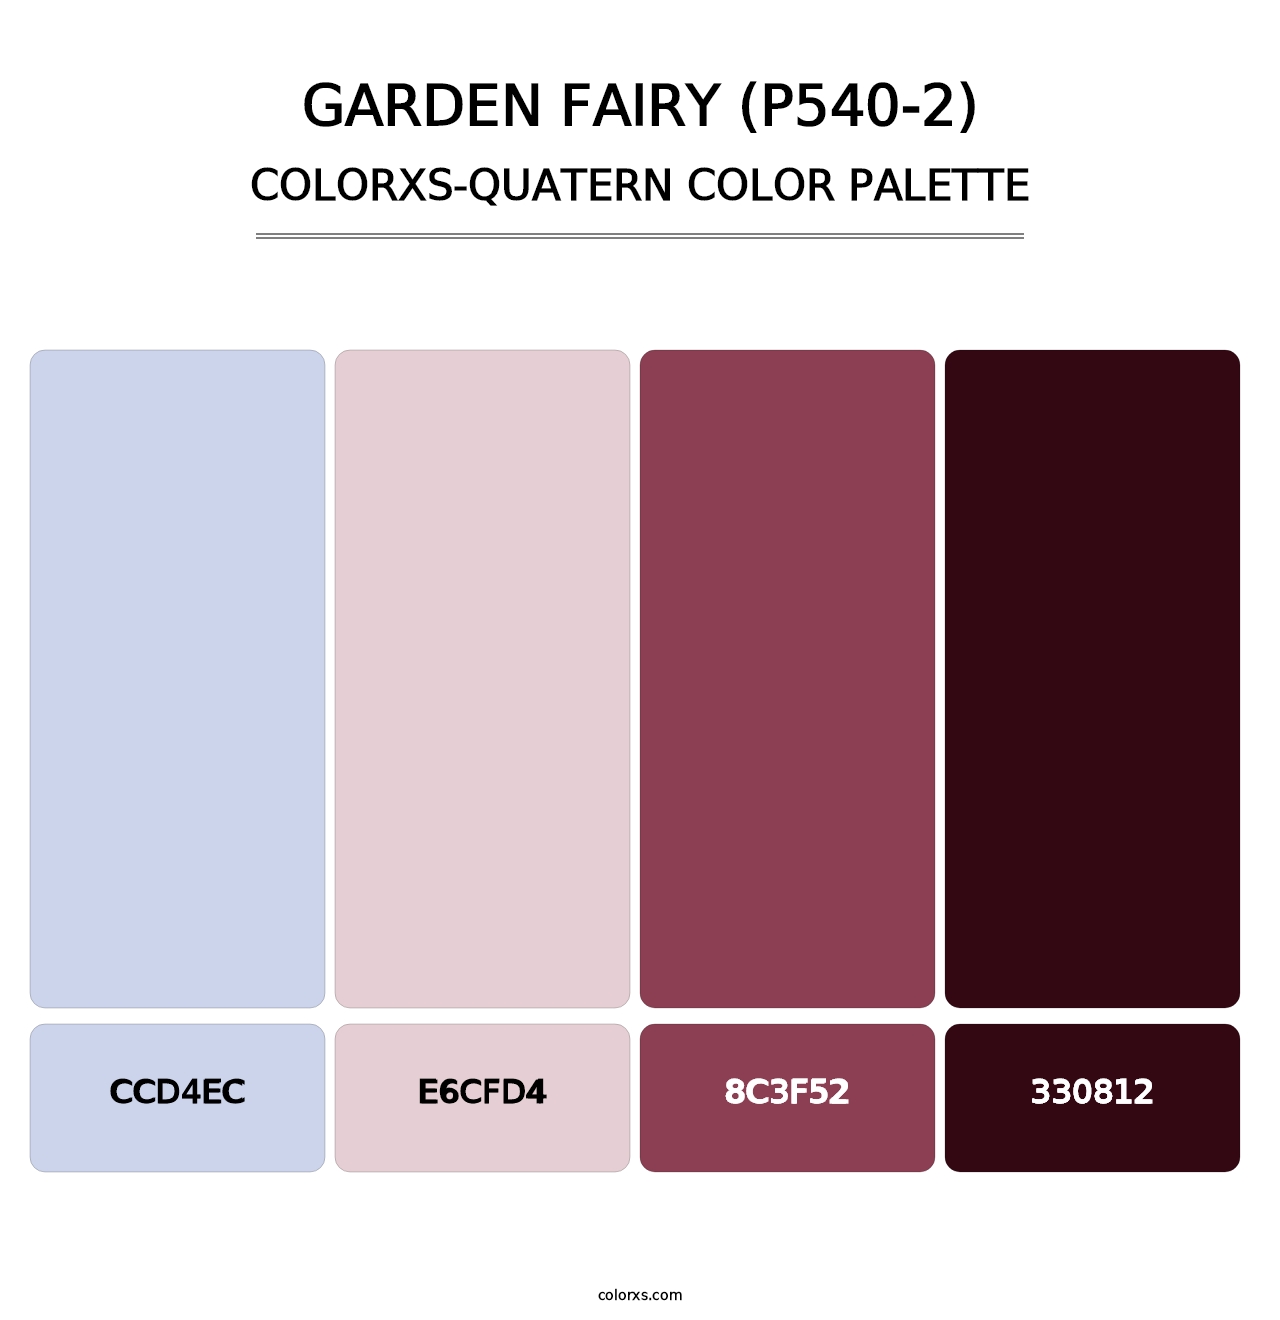 Garden Fairy (P540-2) - Colorxs Quatern Palette